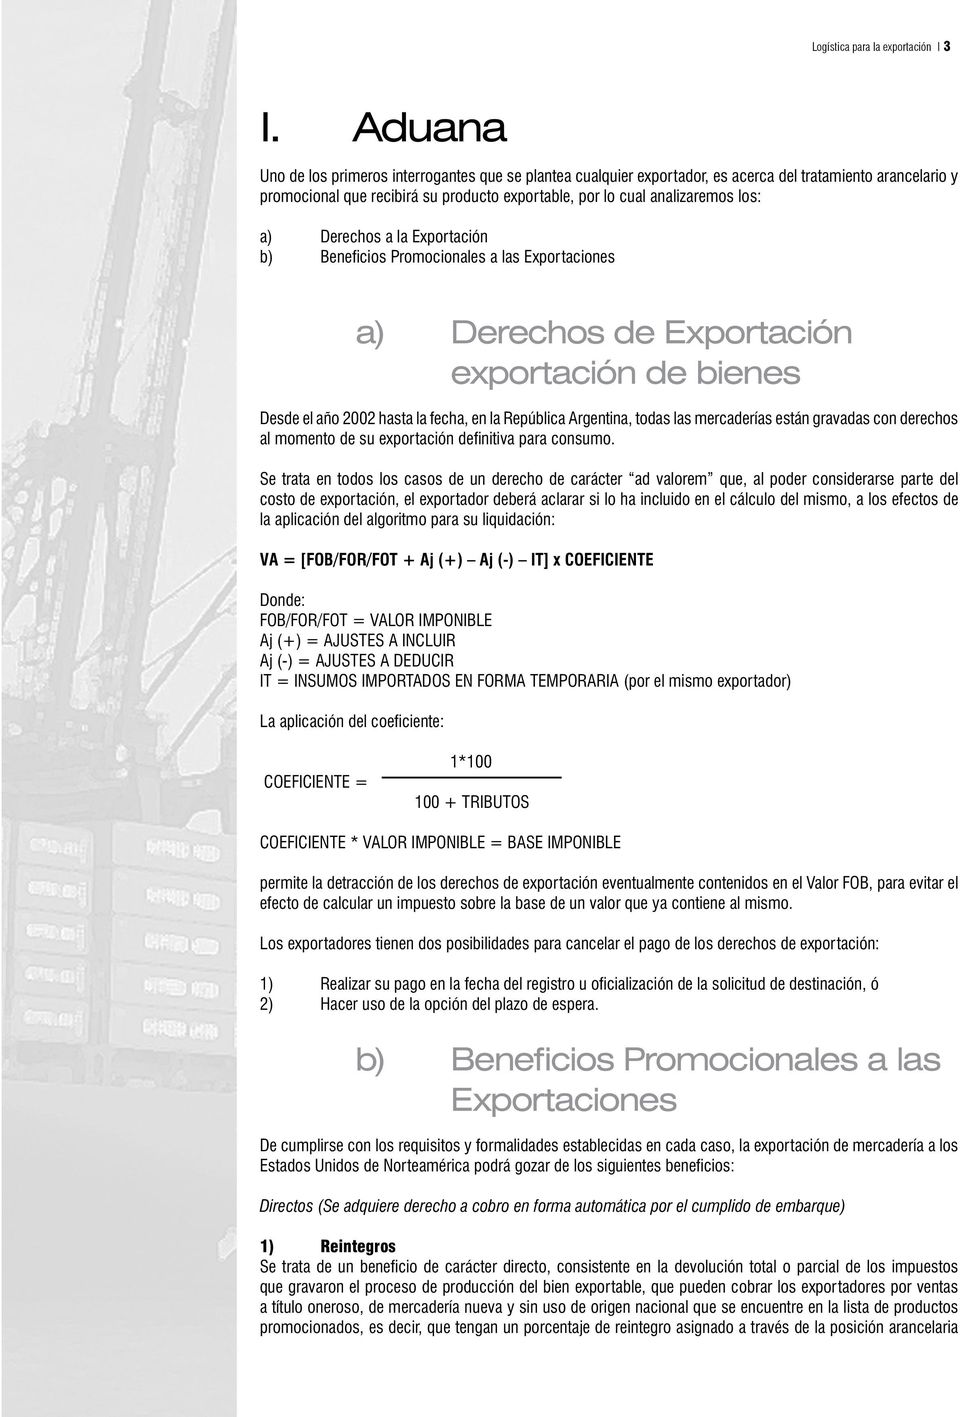 Derechos a la Exportación b) Beneficios Promocionales a las Exportaciones a) Derechos de Exportación exportación de bienes Desde el año 2002 hasta la fecha, en la República Argentina, todas las